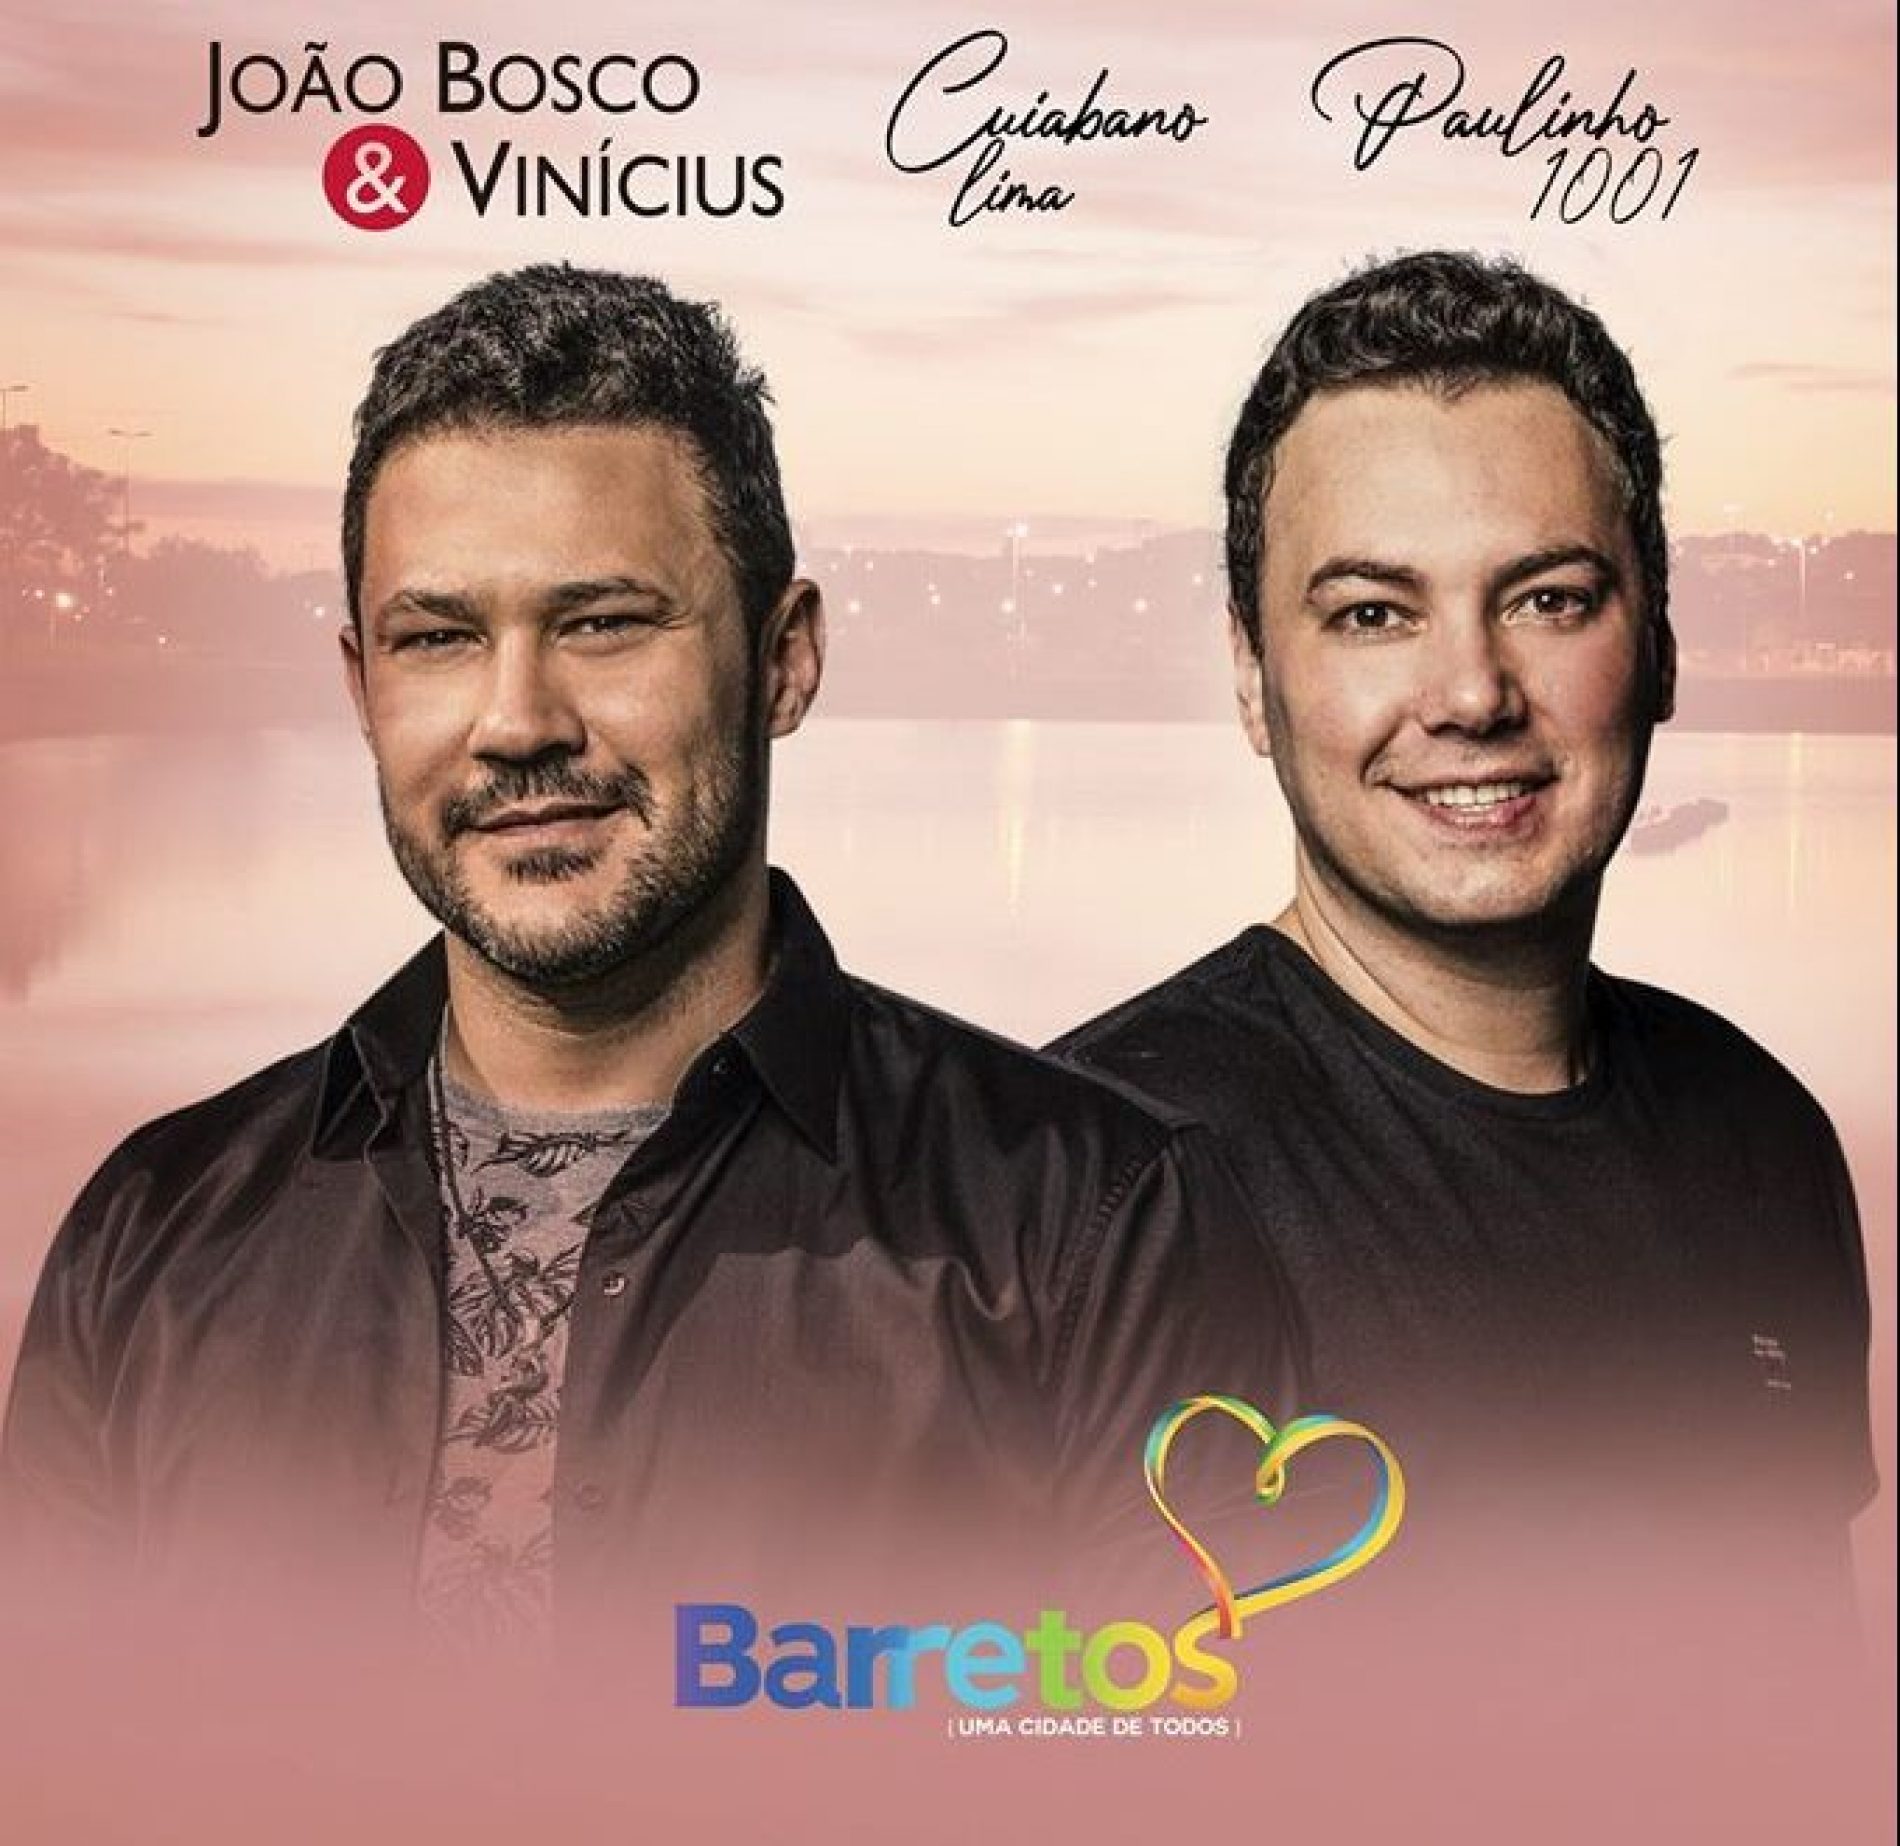 BARRETOS: Show de João Bosco & Vinícius na Região dos Lagos na Virada de 2020